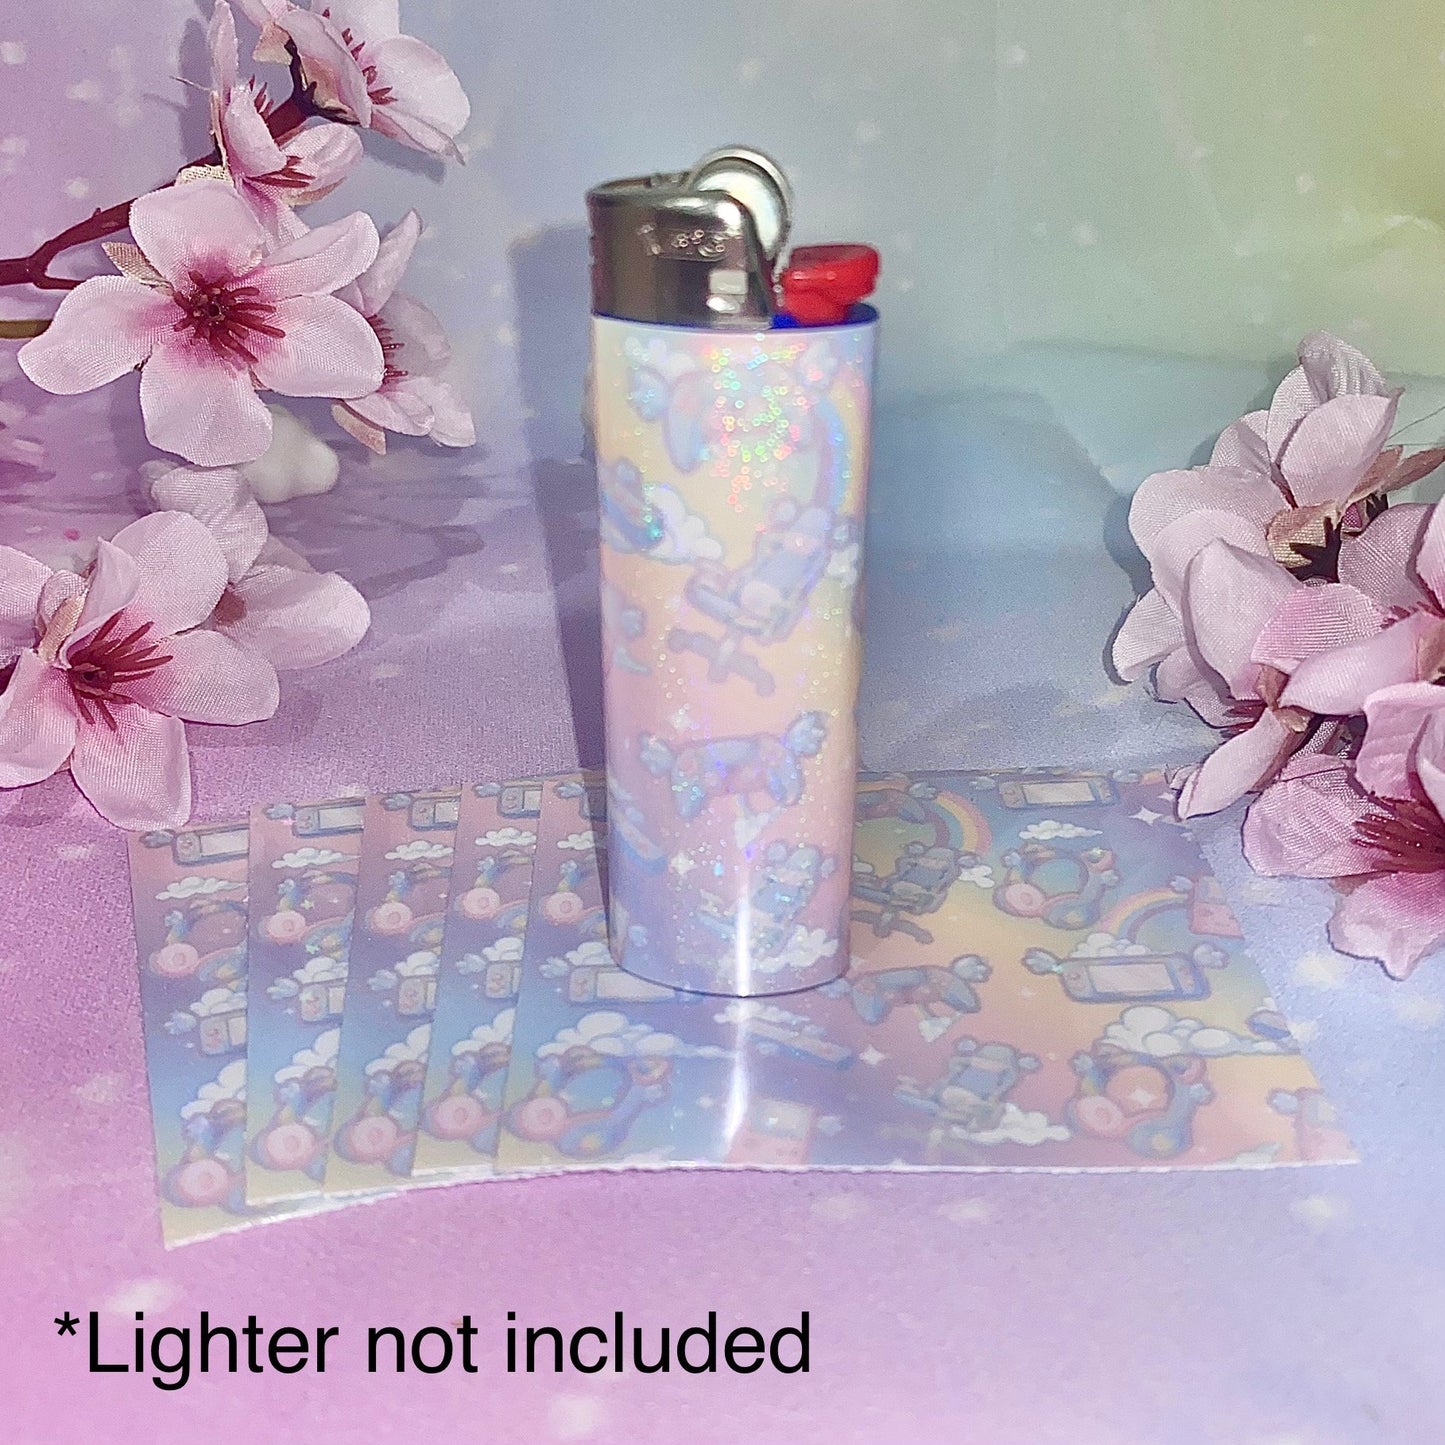 Gamer Lighter Wrap | gamer lighter wrap, Kawaii lighter wraps, lighter wraps, gamer girl art, girly stickers, Kawaii, stickers